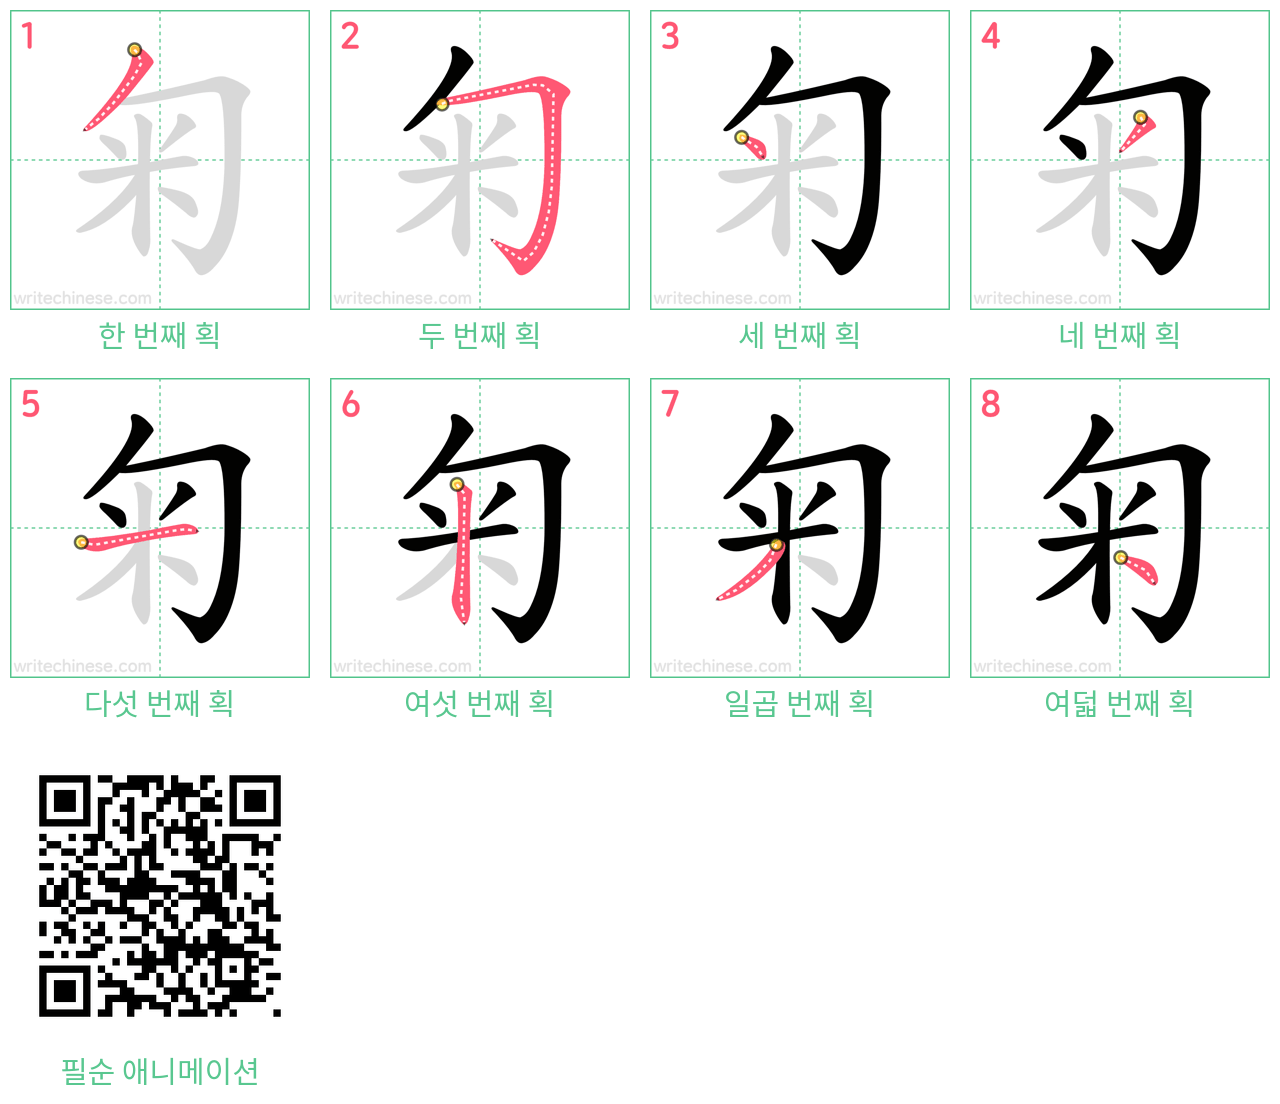 匊 step-by-step stroke order diagrams